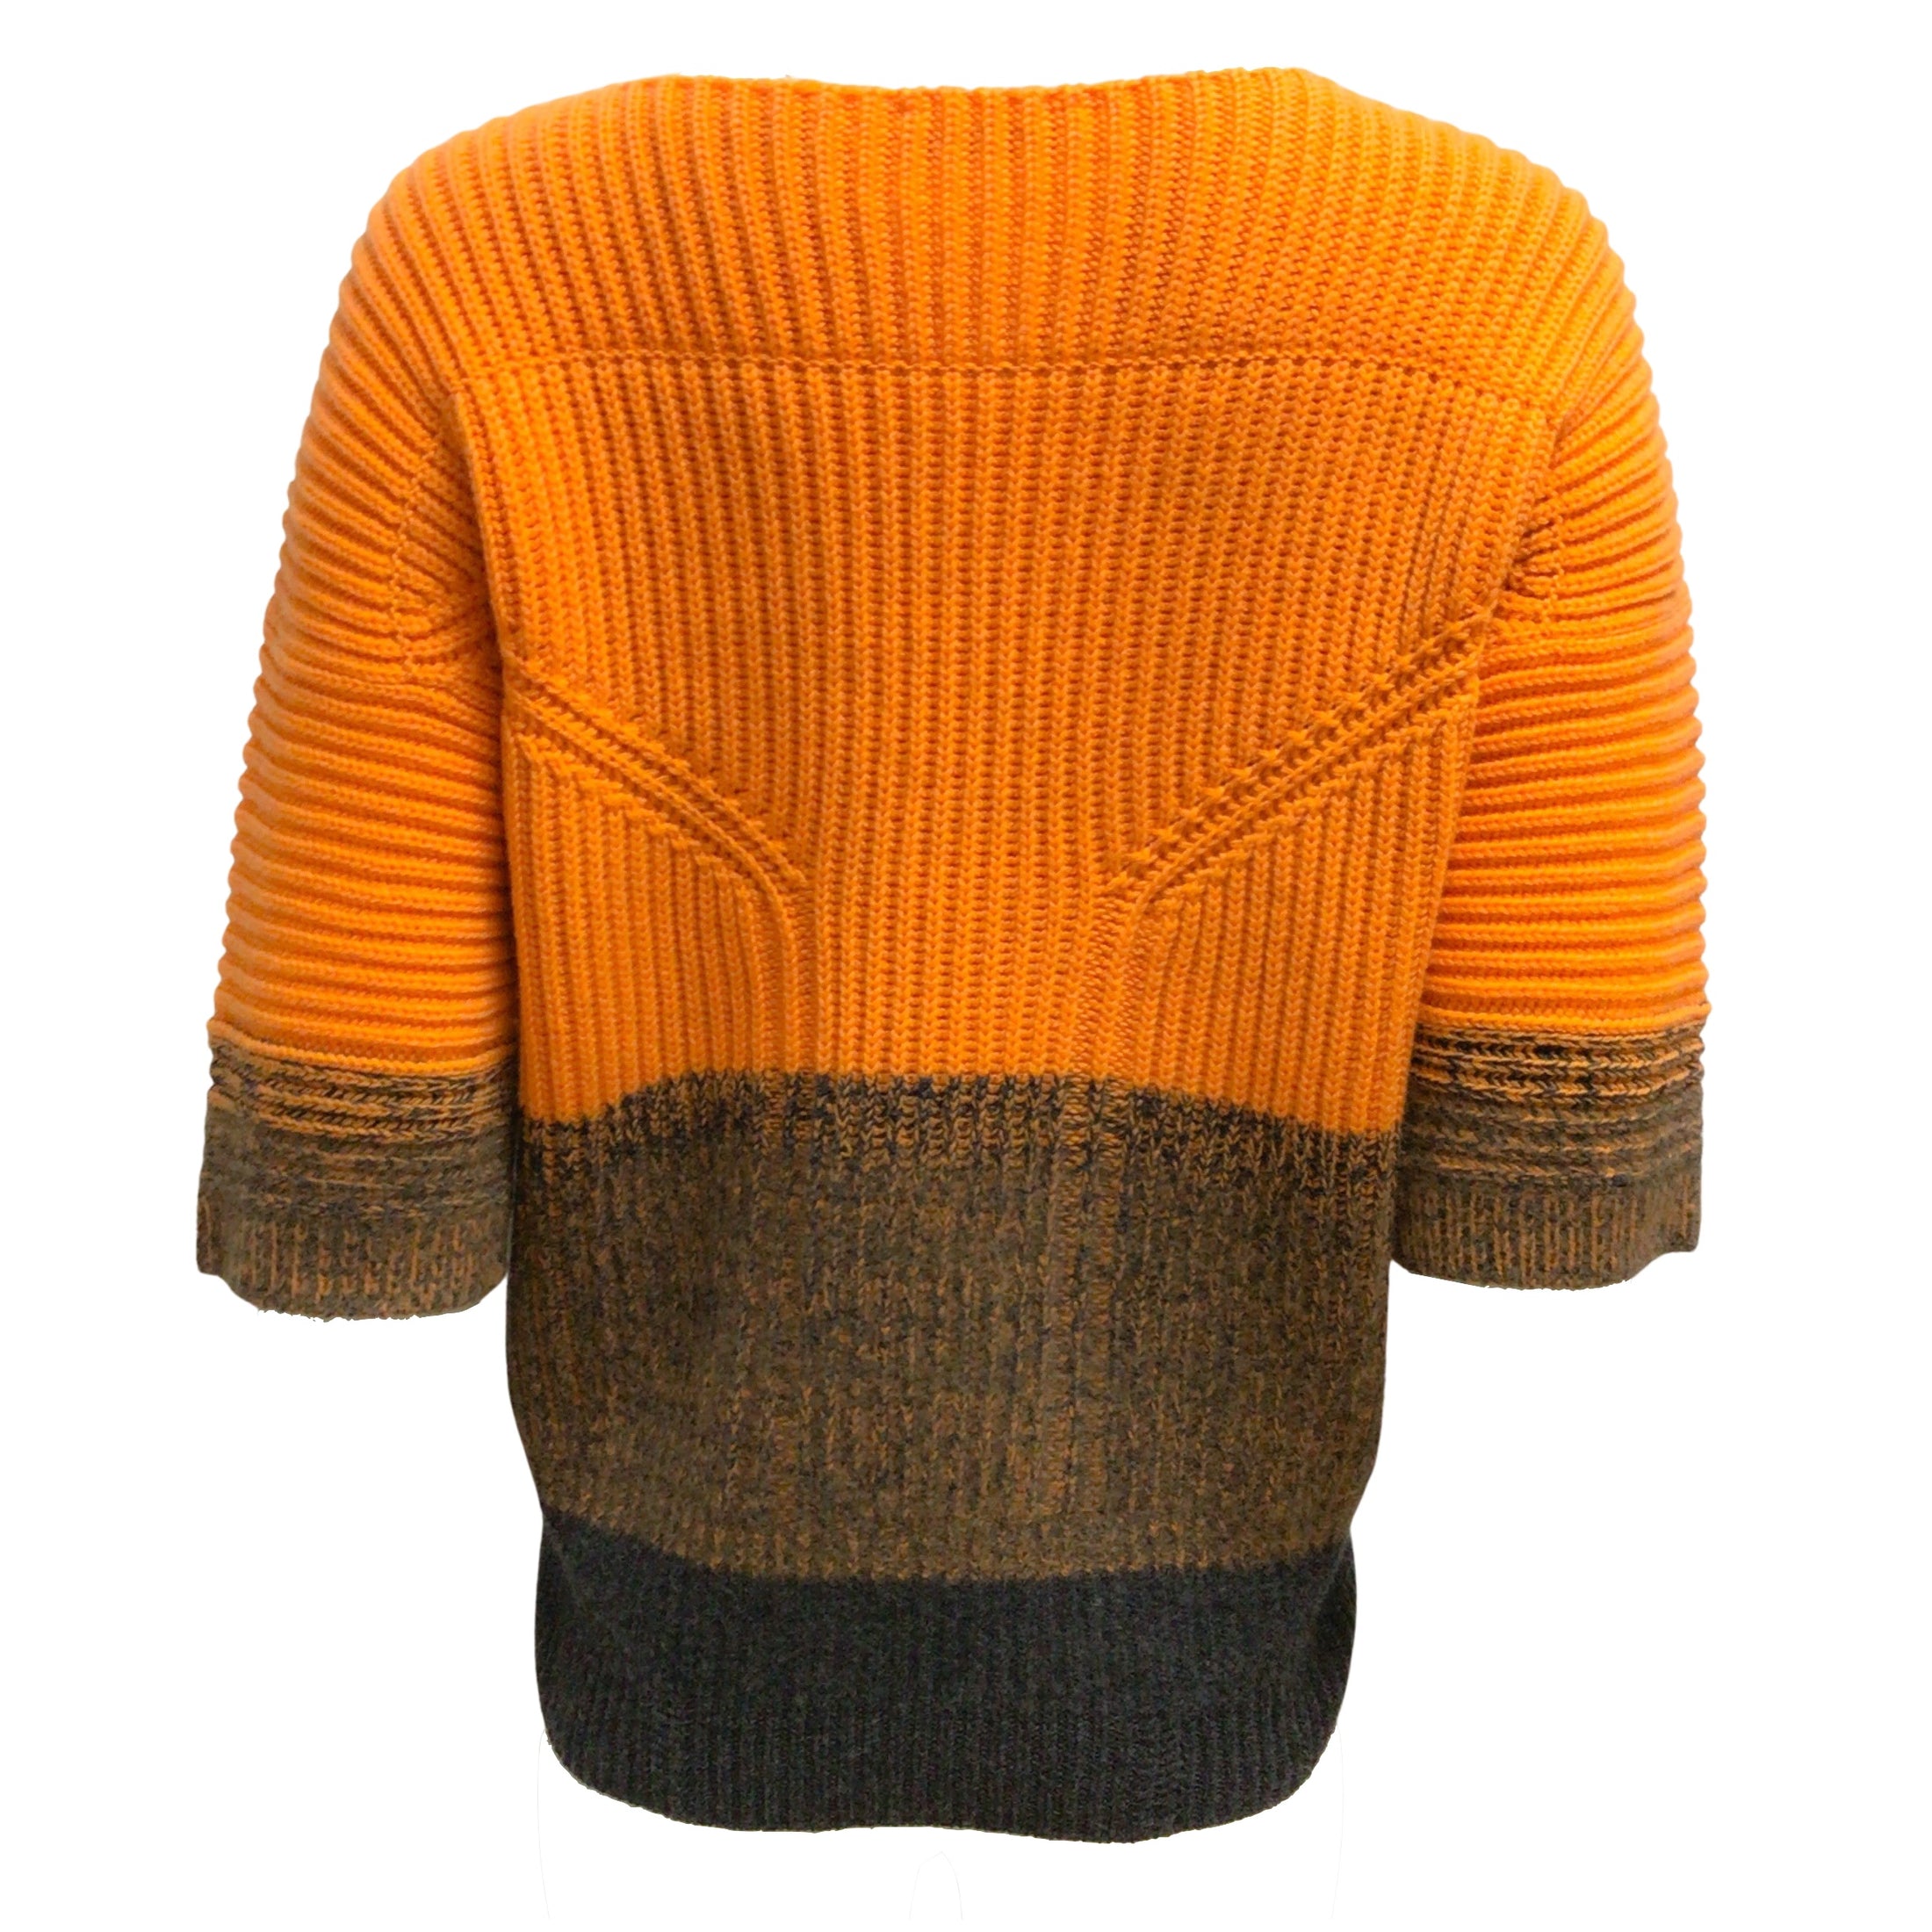 Jil Sander Short Sleeved Ribbed Knit Cashmere Orange / Charcoal Grey Sweater